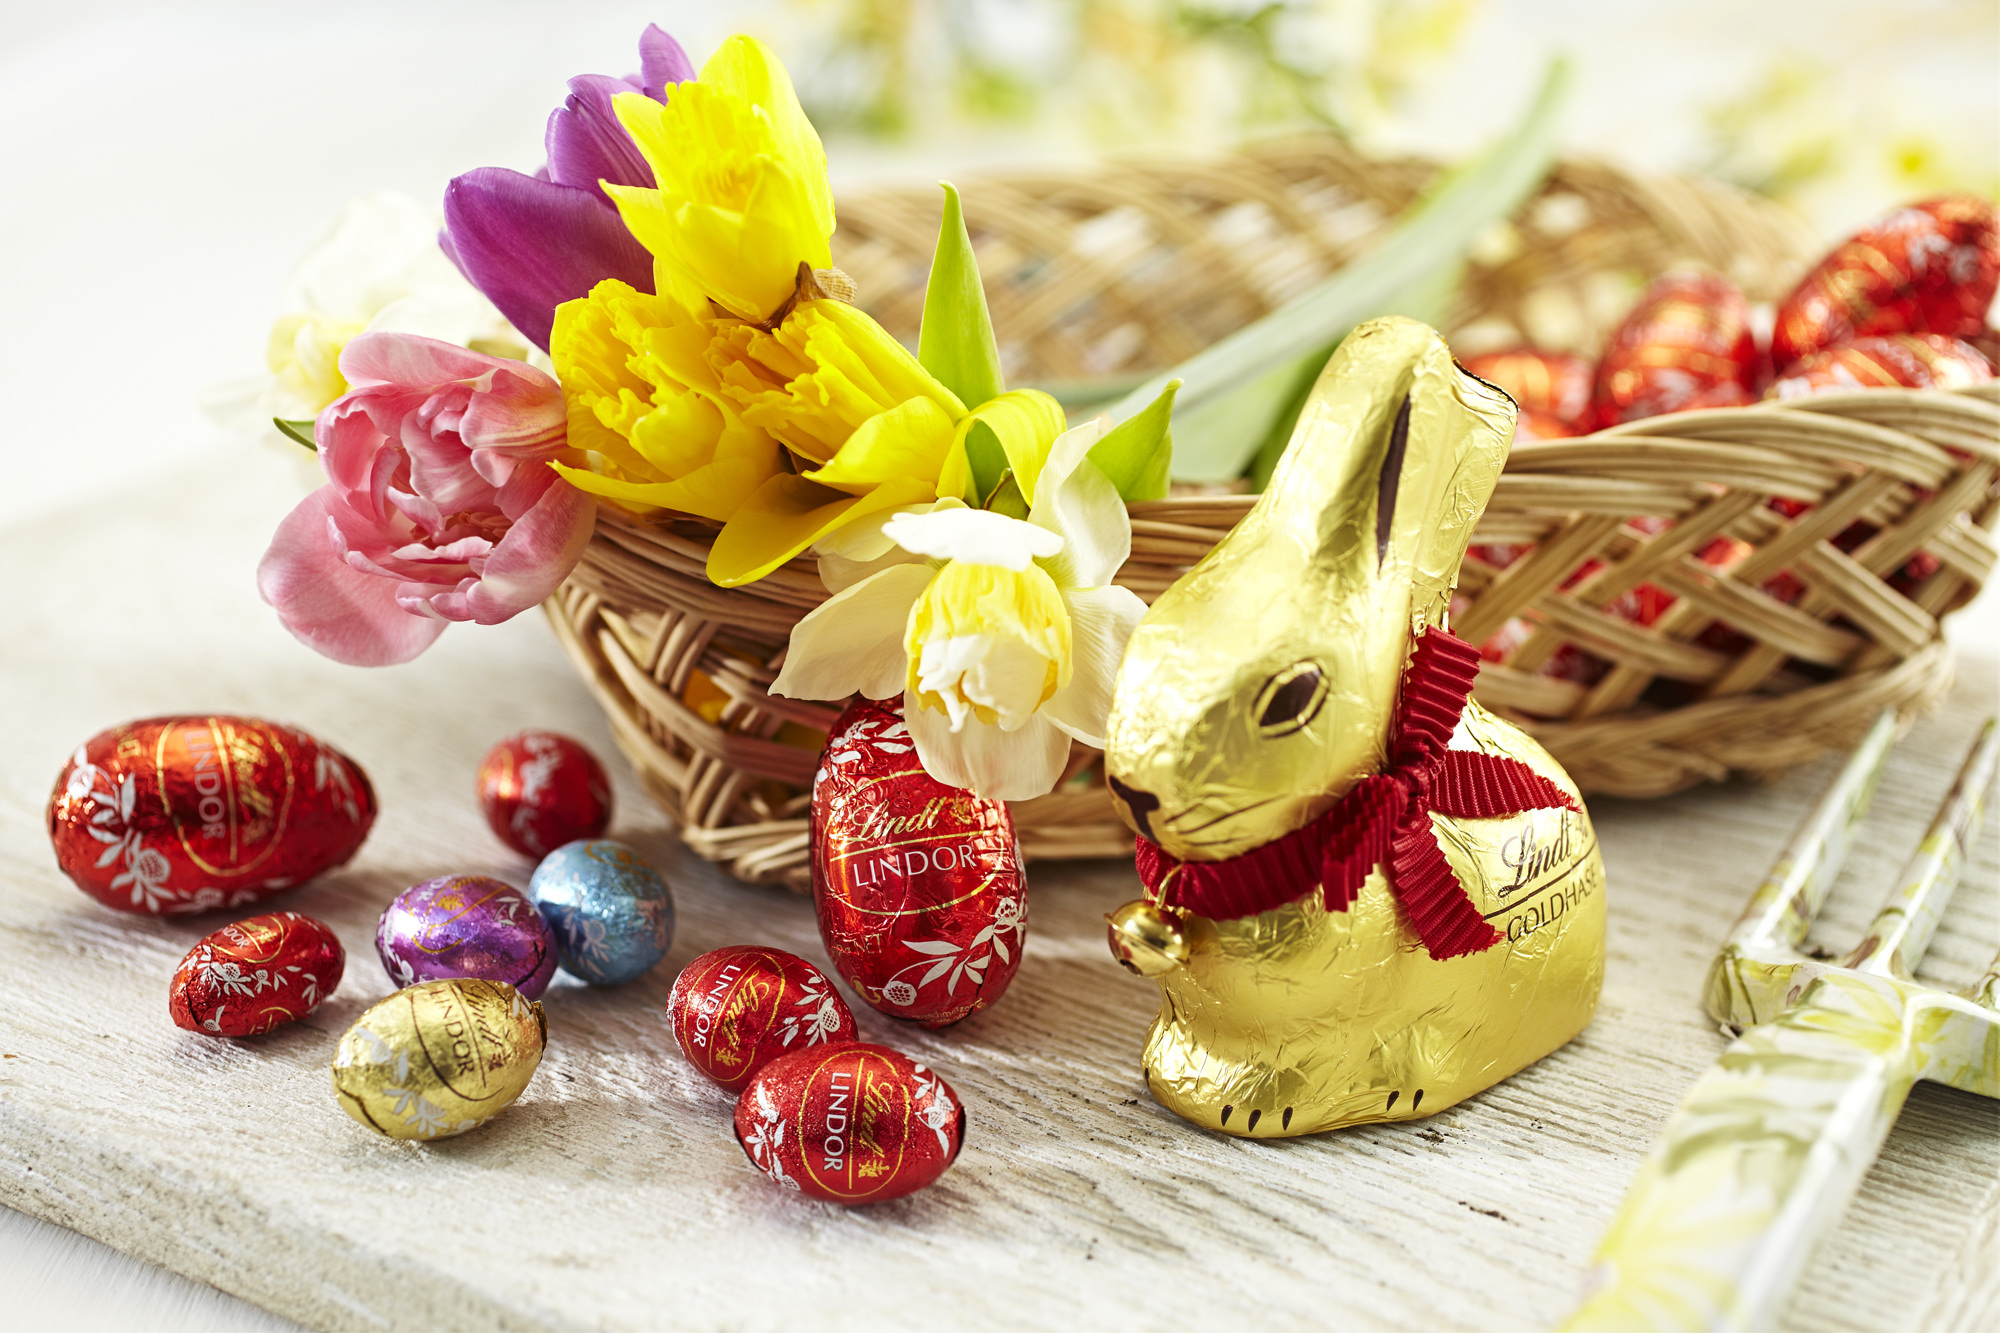 リンツ、2019イースター向けチョコレートが3月18日に勢揃い　
春の訪れを祝う、愛らしいうさぎやたまごの形のチョコレート